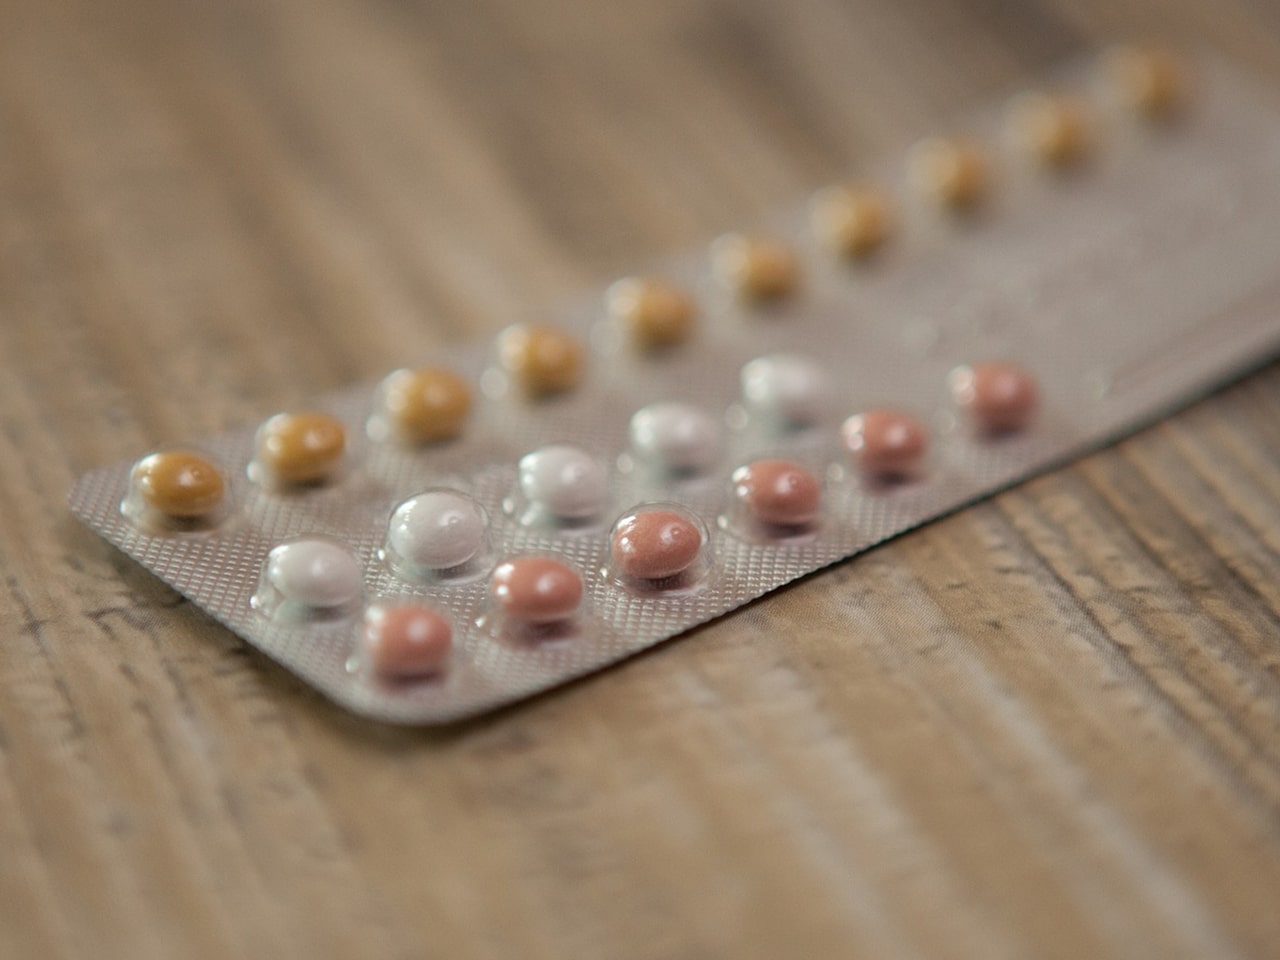 arreter la pilule contraceptive